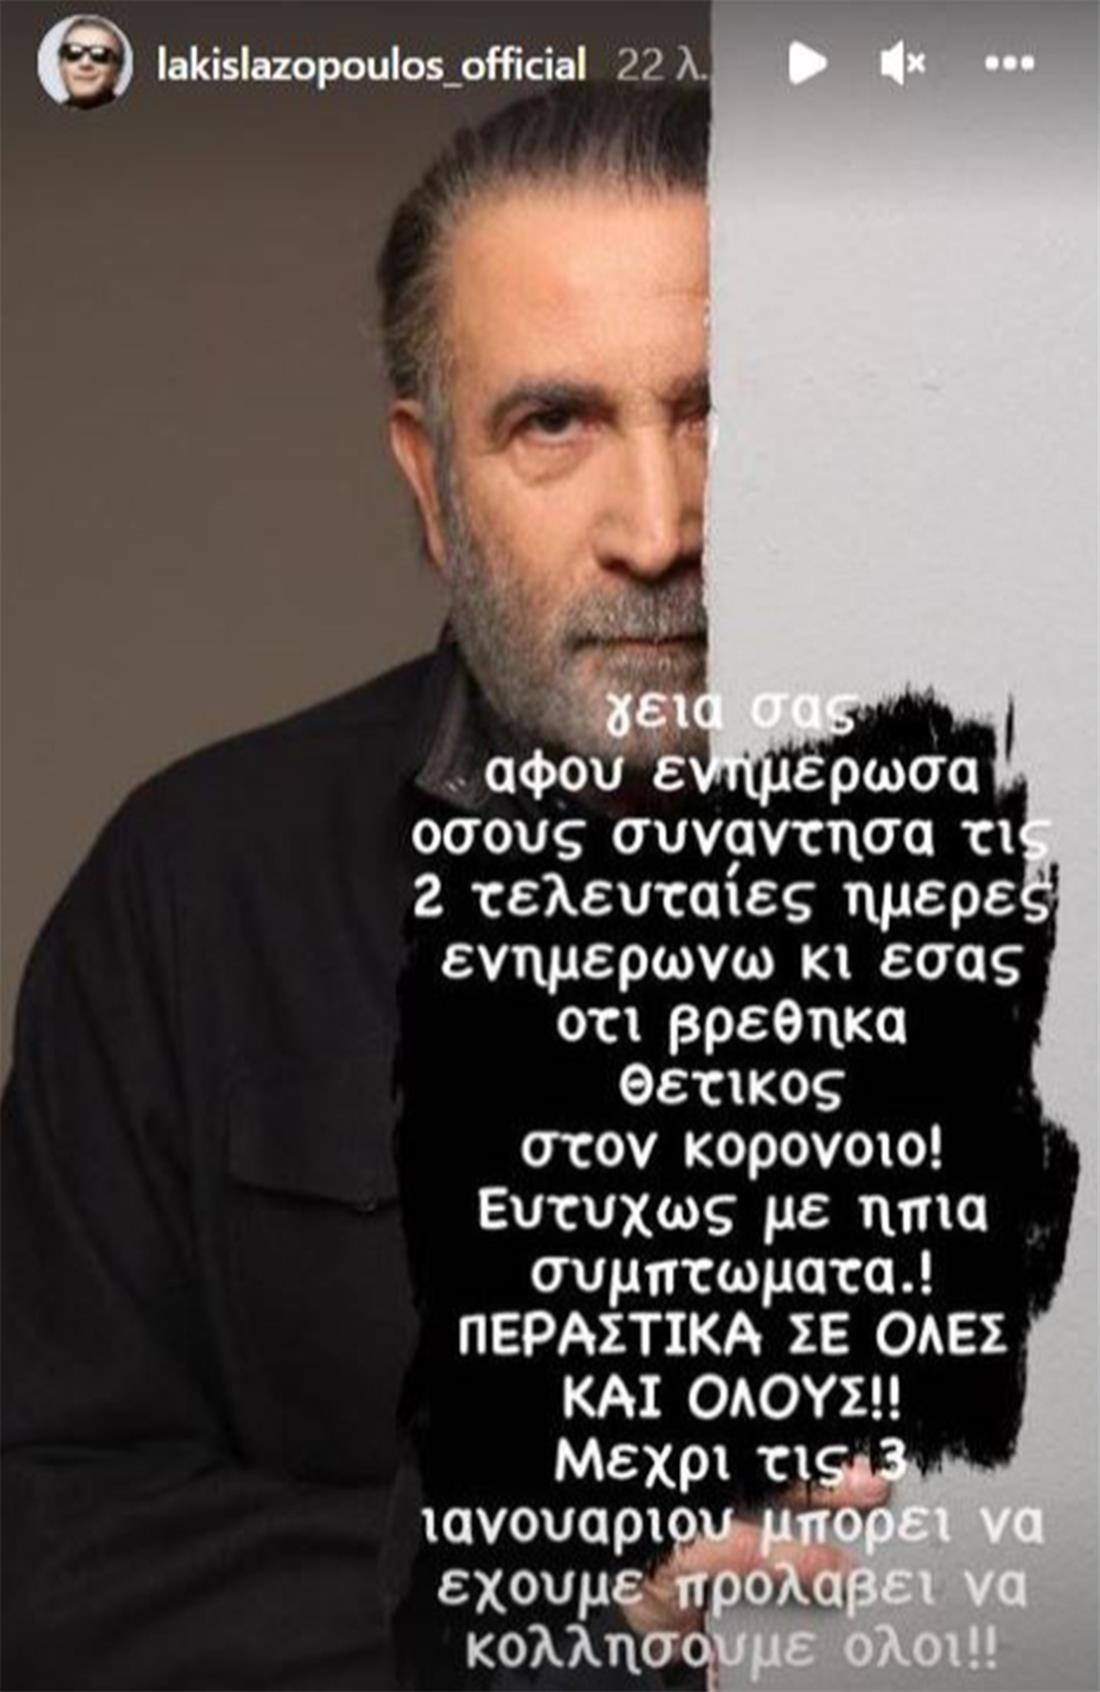 Λάκης Λαζόπουλος - κορονοϊός